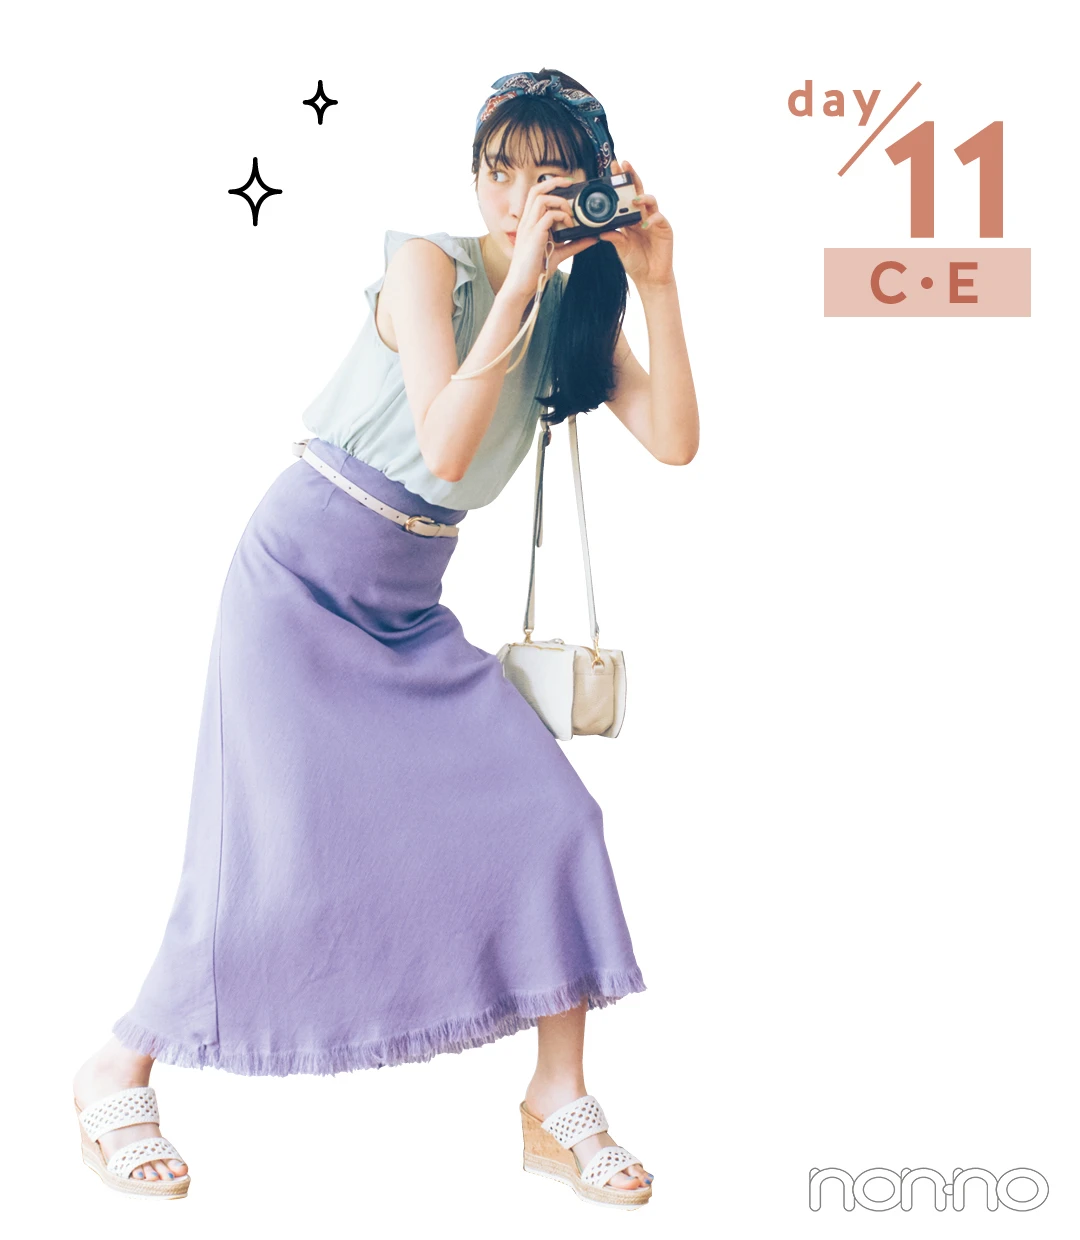 day/11 C・E